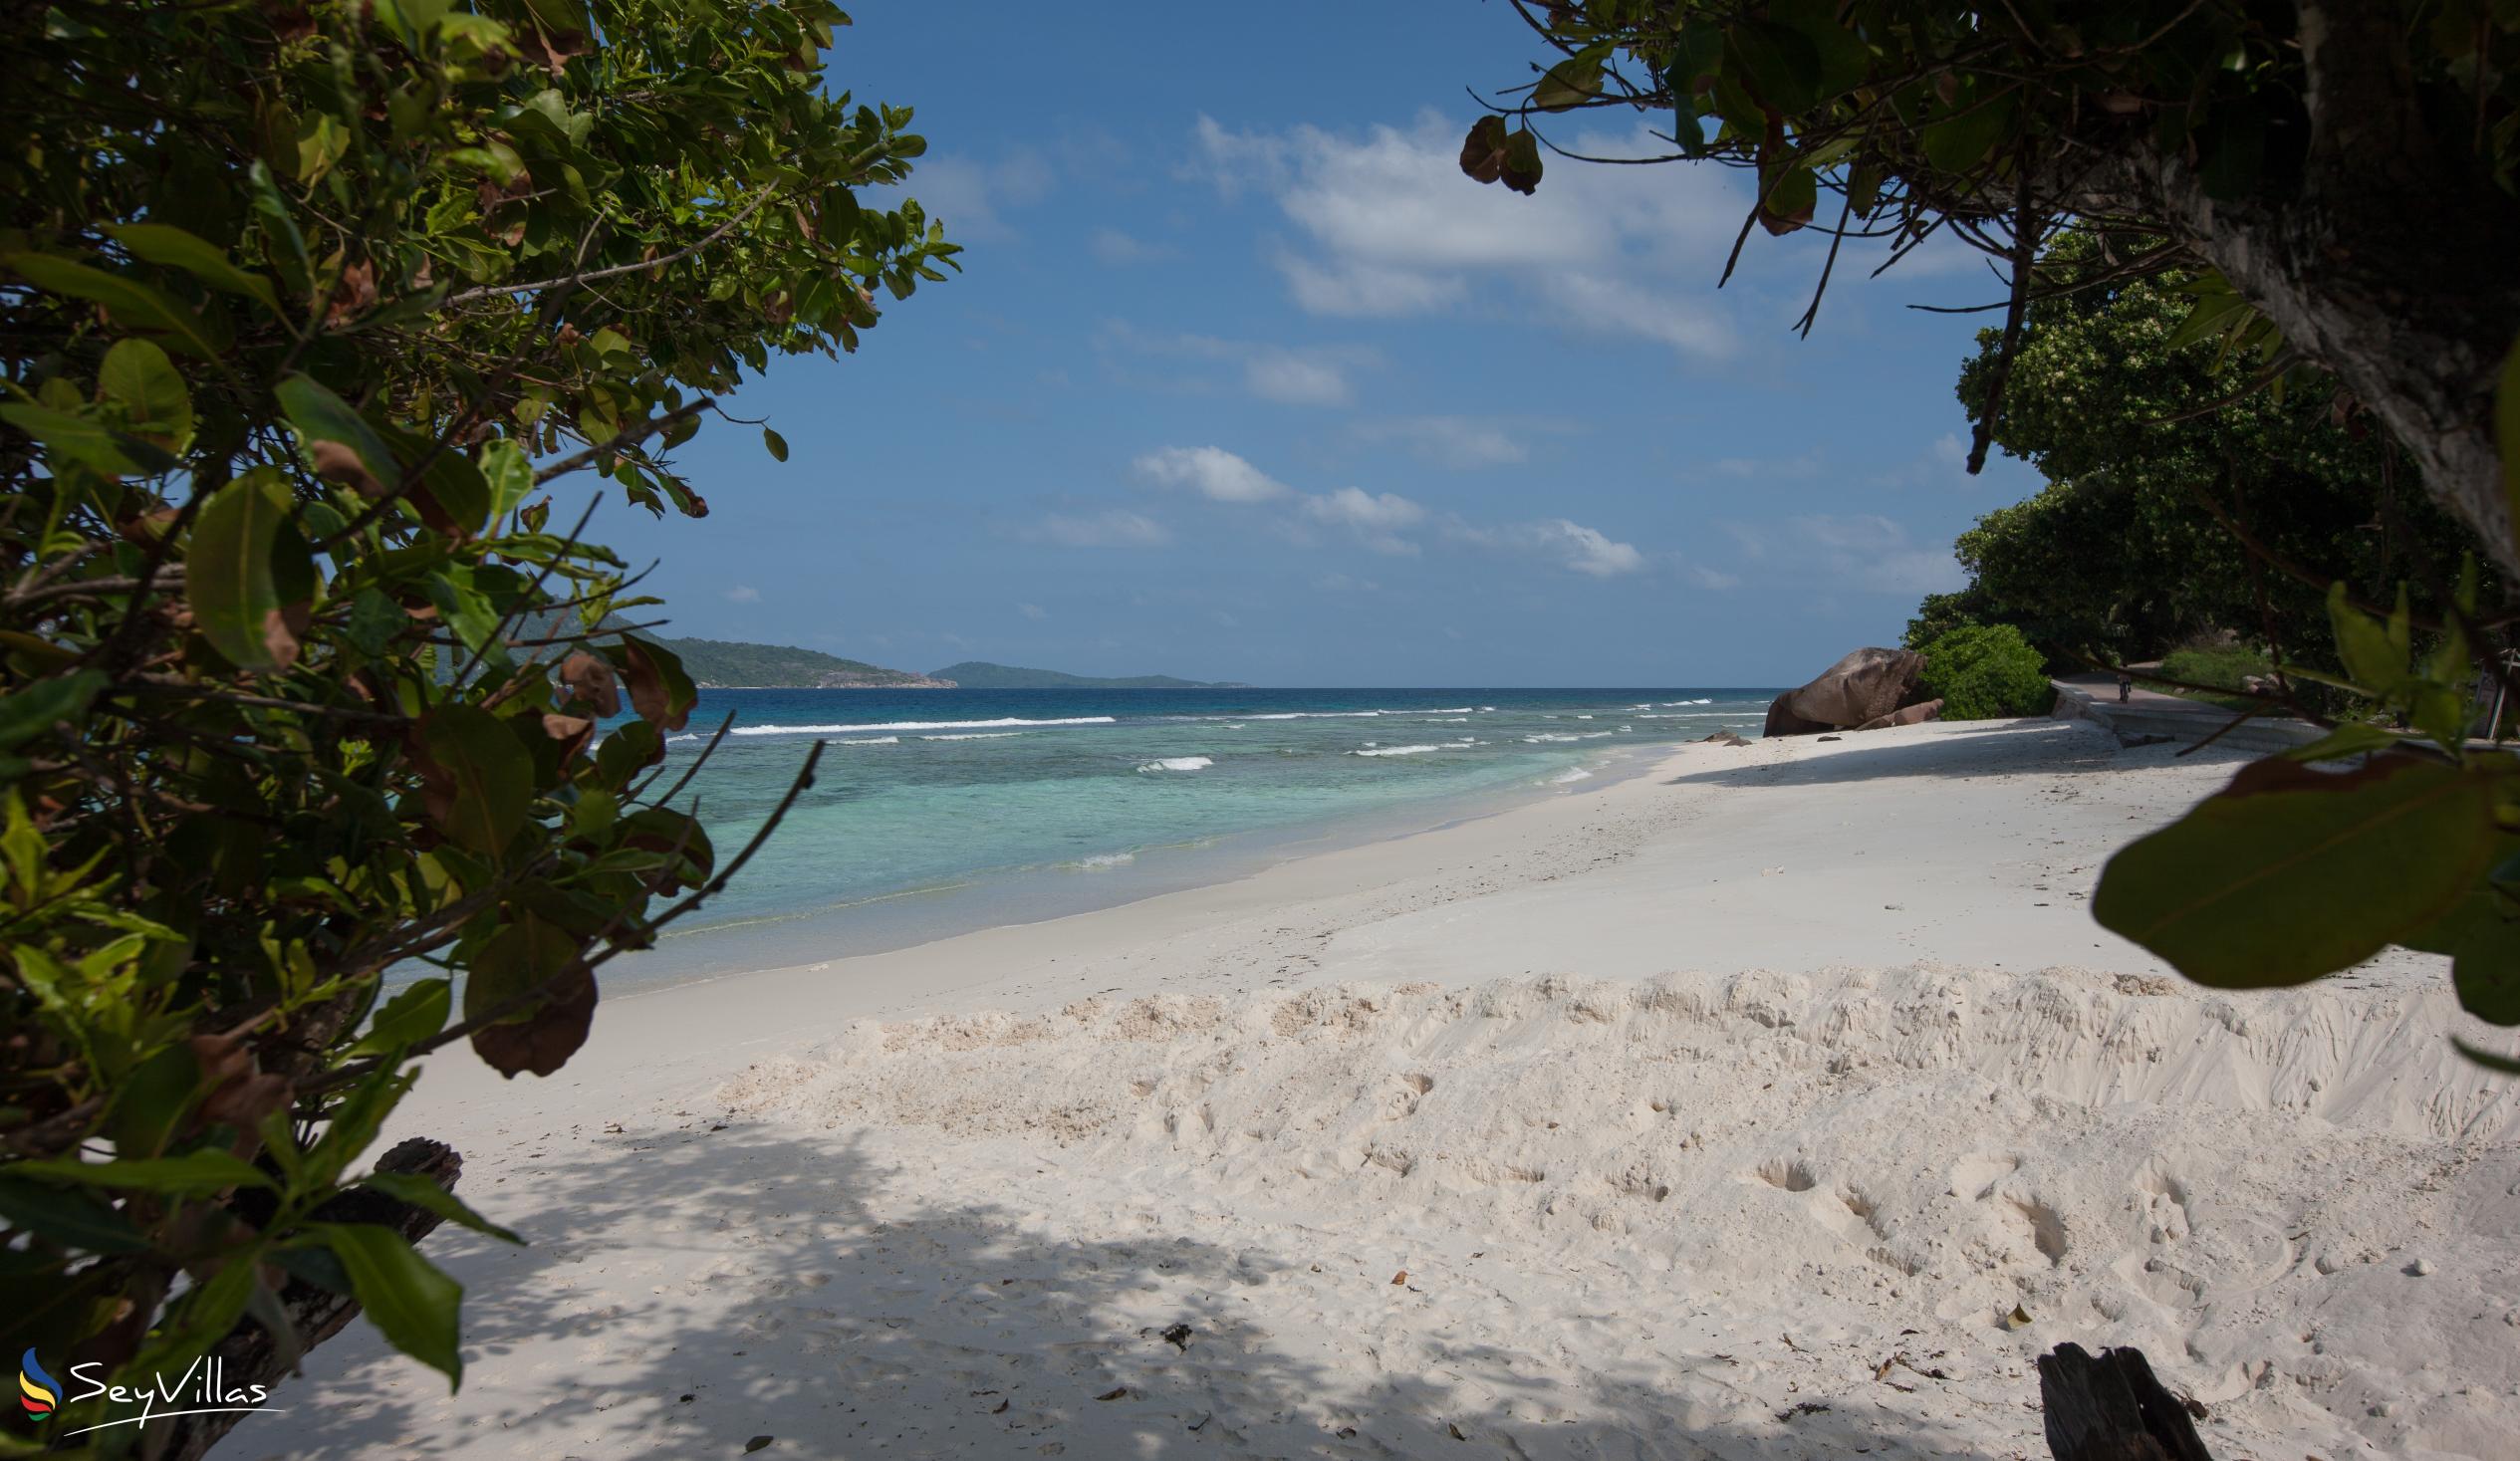 Foto 38: Le Relax Luxury Lodge - Location - La Digue (Seychelles)